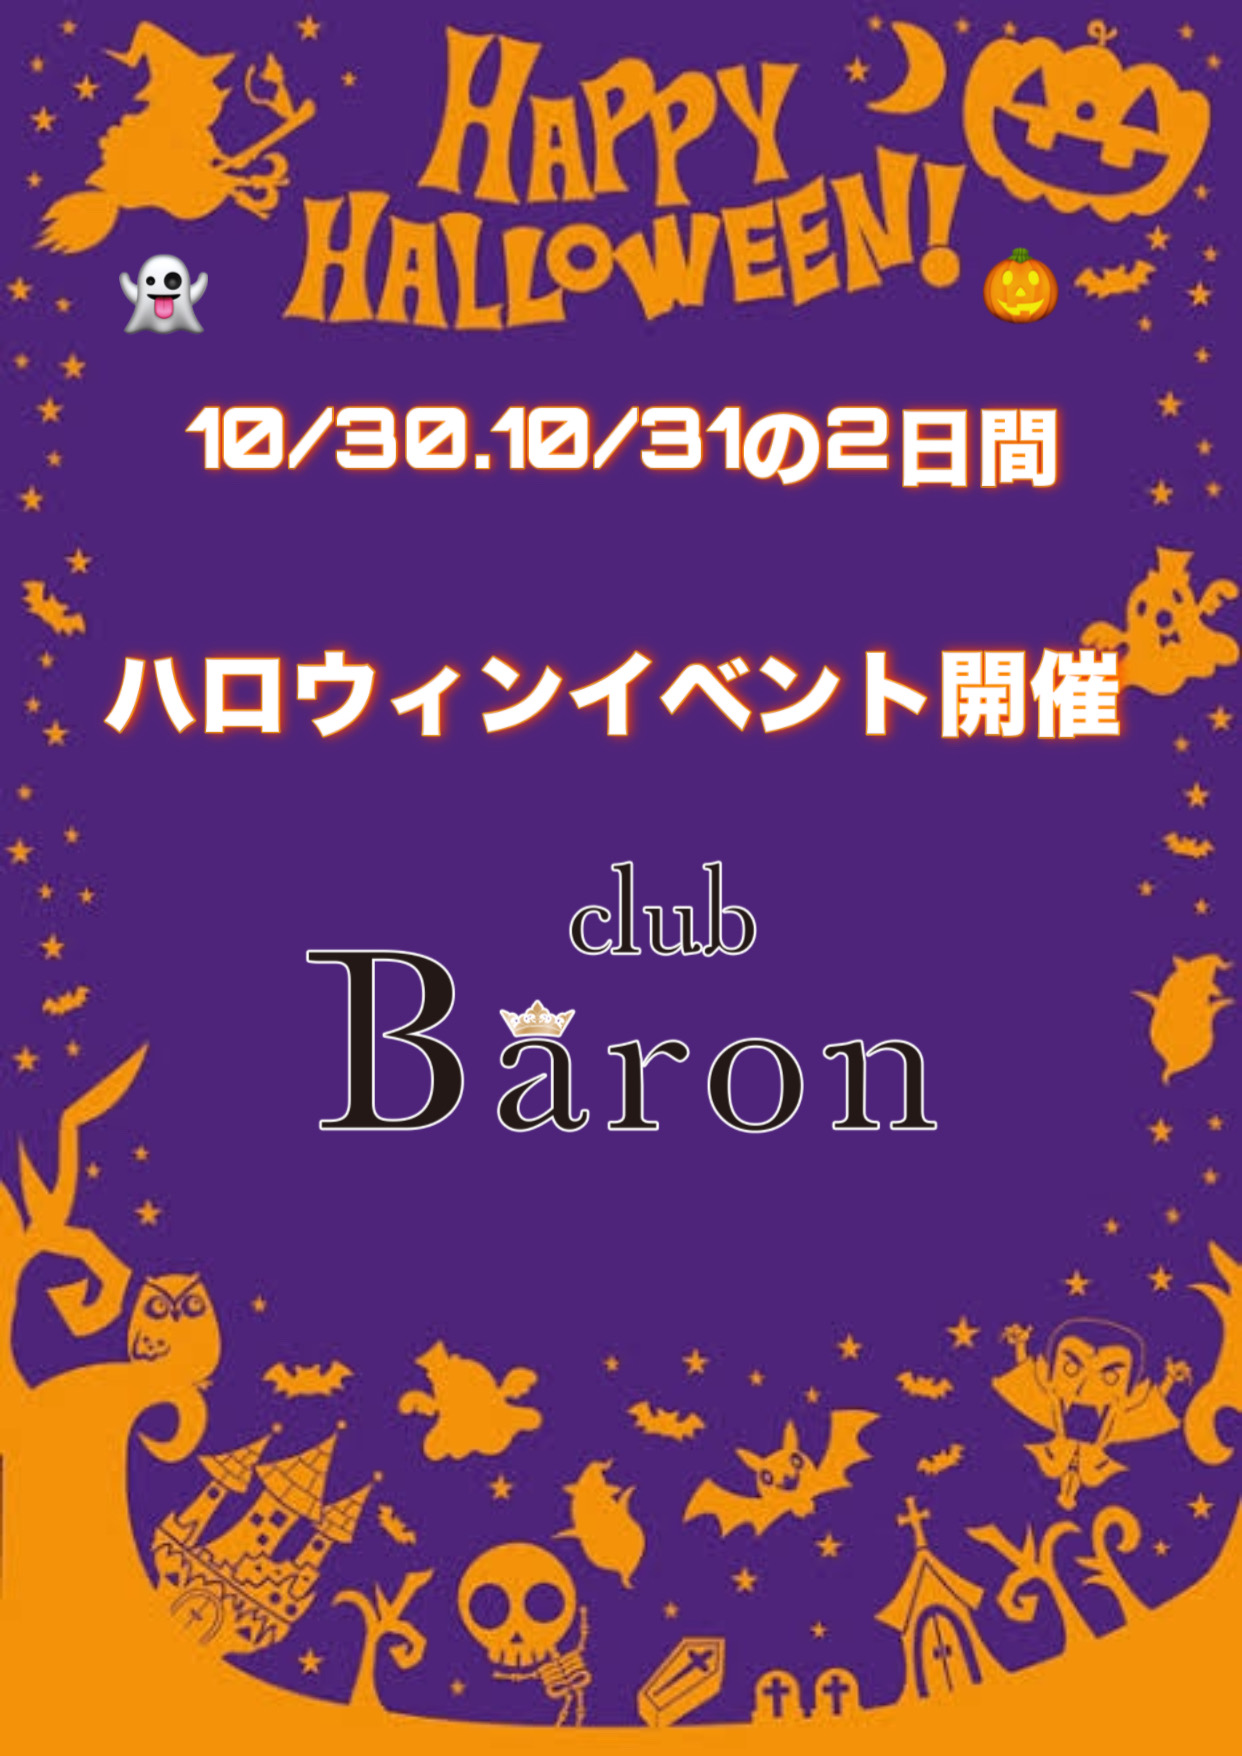 EVENT-ハロウィンイベント告知（Baron）